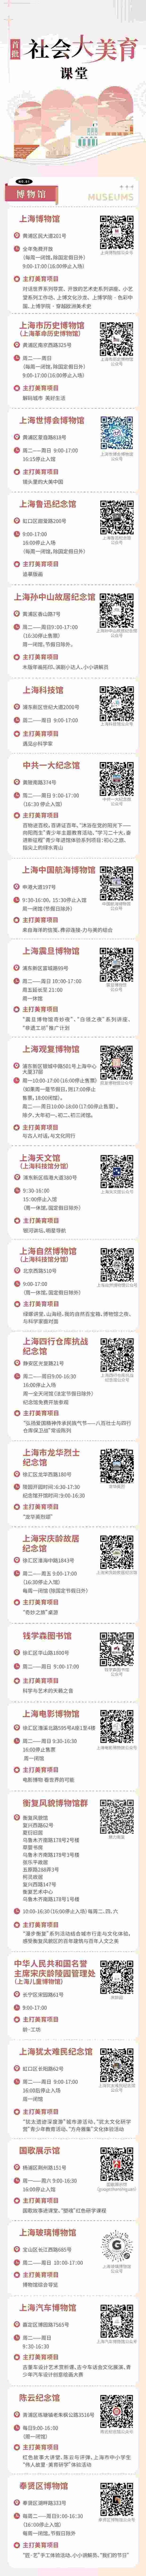 【图说上海】沪上首批70个“社会大美育”课堂名单揭晓